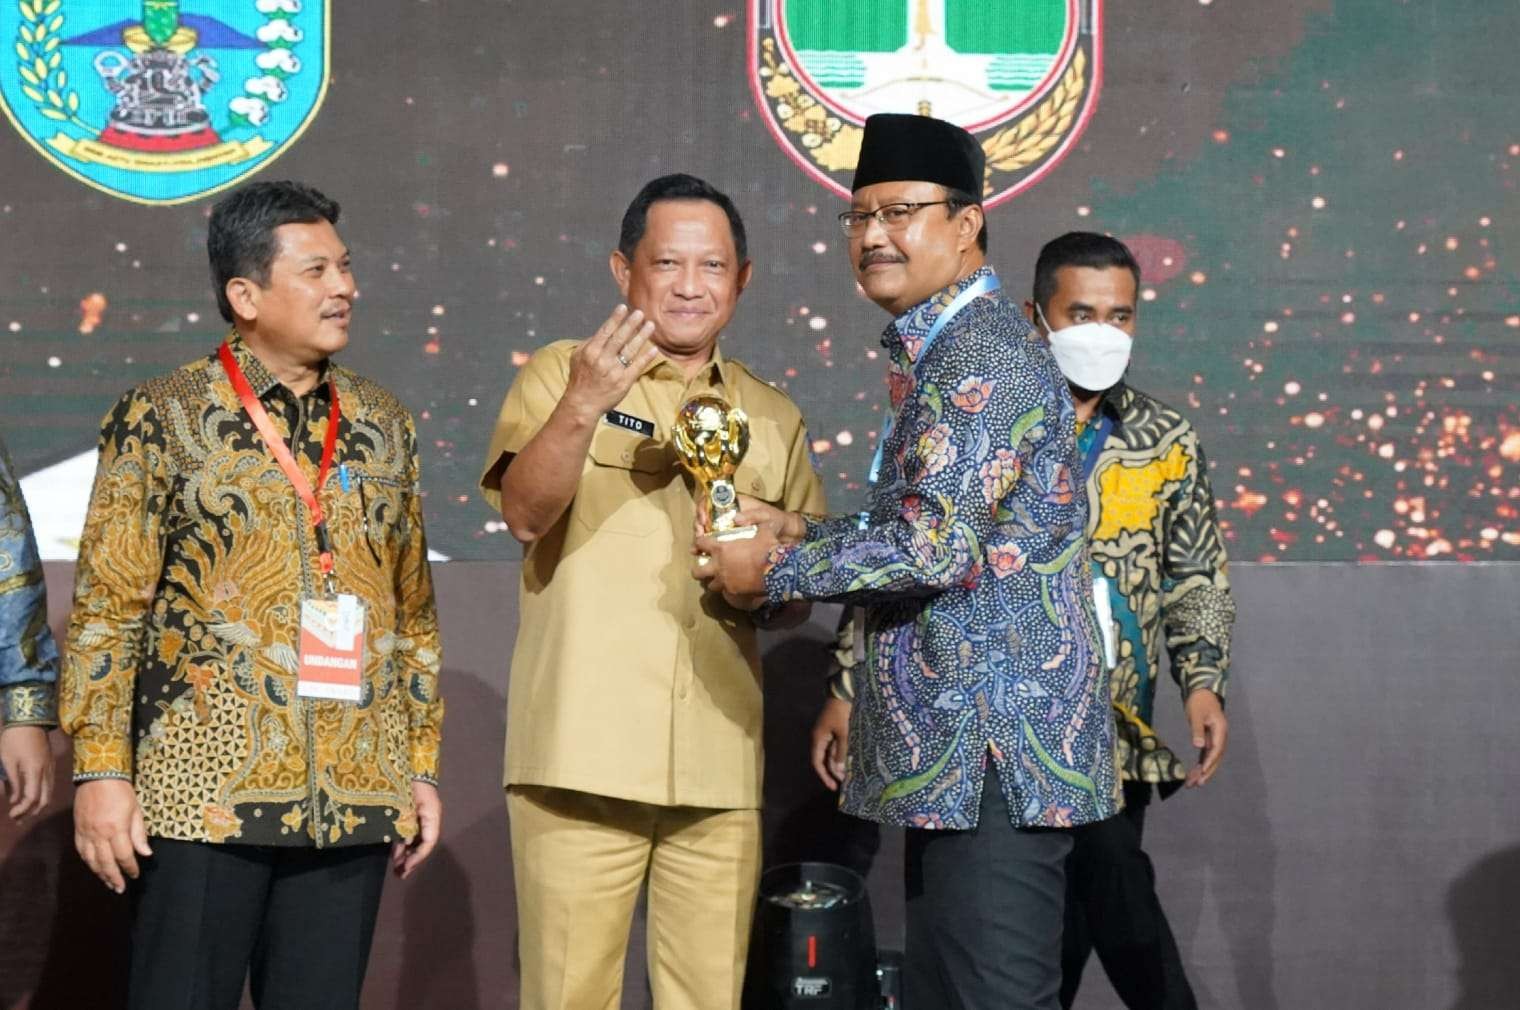 Walikota Pasuruan Saifullah Yusuf alias Gus Ipul saat menerima penghargaan UHC 100 Persen dari Kemendagri Tito Karnavian. (Foto: Humas Pemkot Pasuruan)